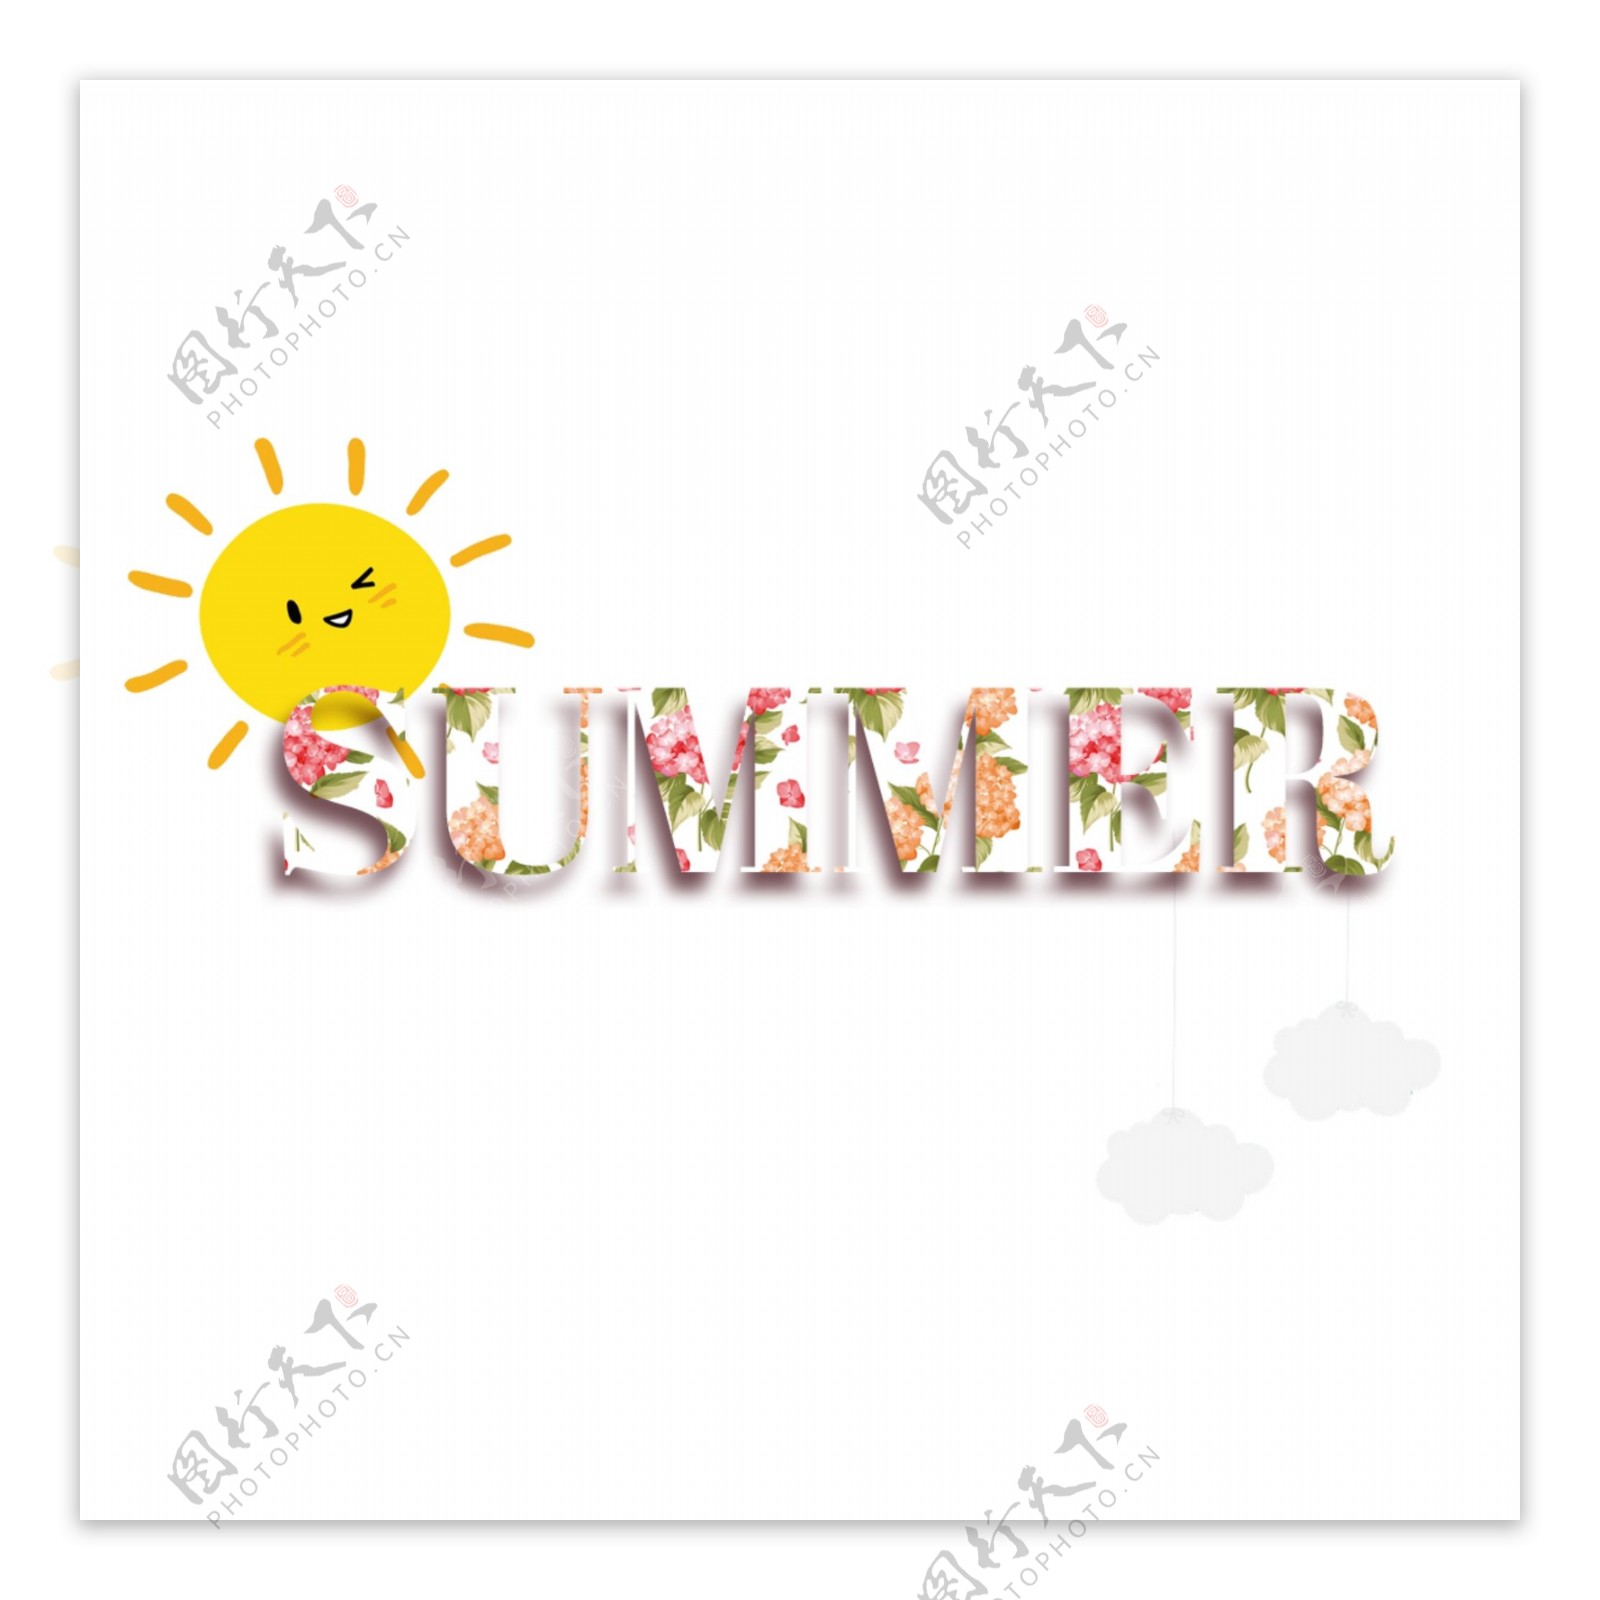 与可爱的太阳的五颜六色的夏天简单的字体